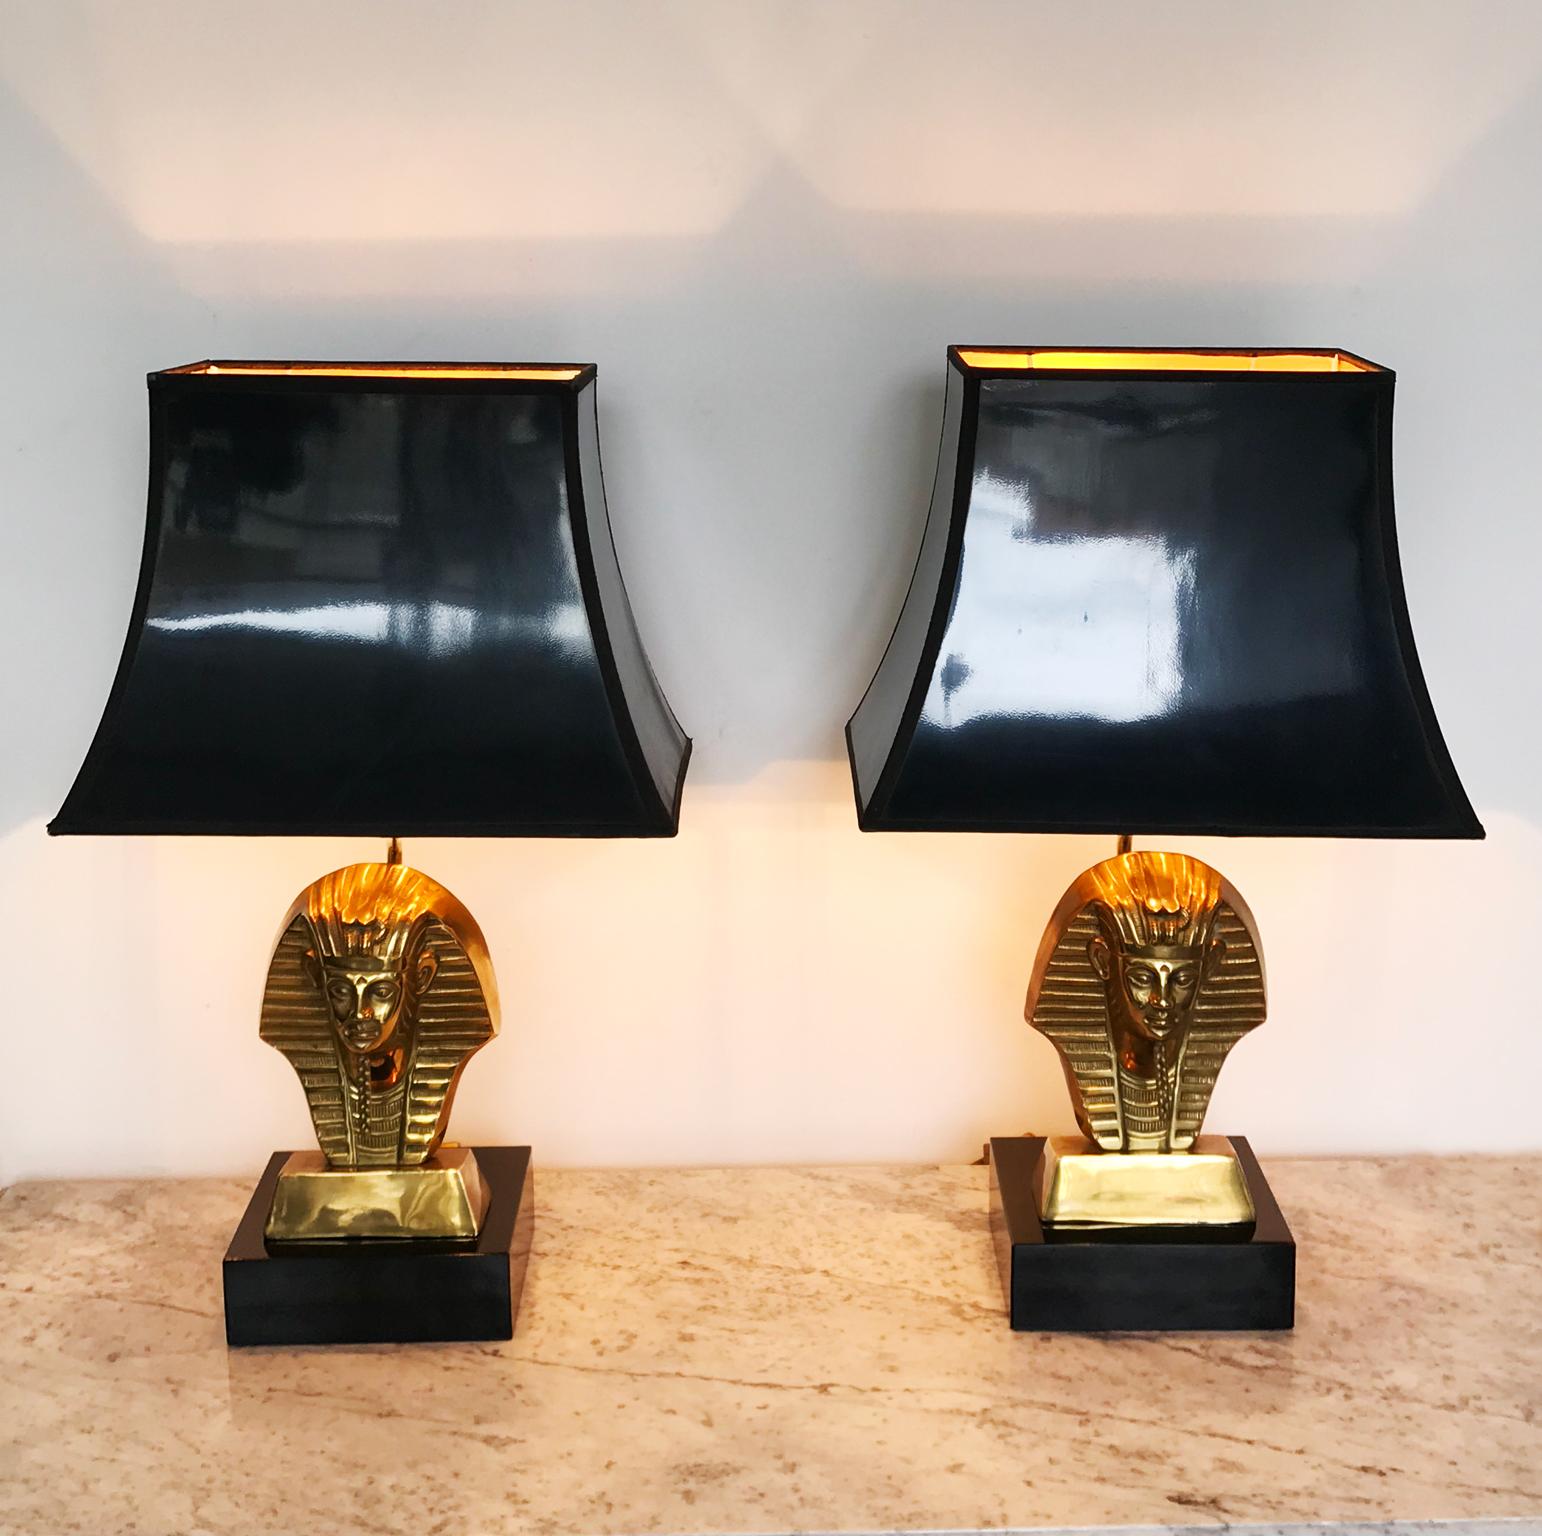 Ein Paar Pharao-King-Tischlampen im Deknudt-Stil, Hollywood Regency, ca. 1960er Jahre. Diese haben die originalen schwarzen Schirme.

Höhe mit Schirm: 58cm
Höhe ohne Schirm: 38cm
Breite inklusive Schirm: 35cm
Breite der Basis: 17cm
Höhe des